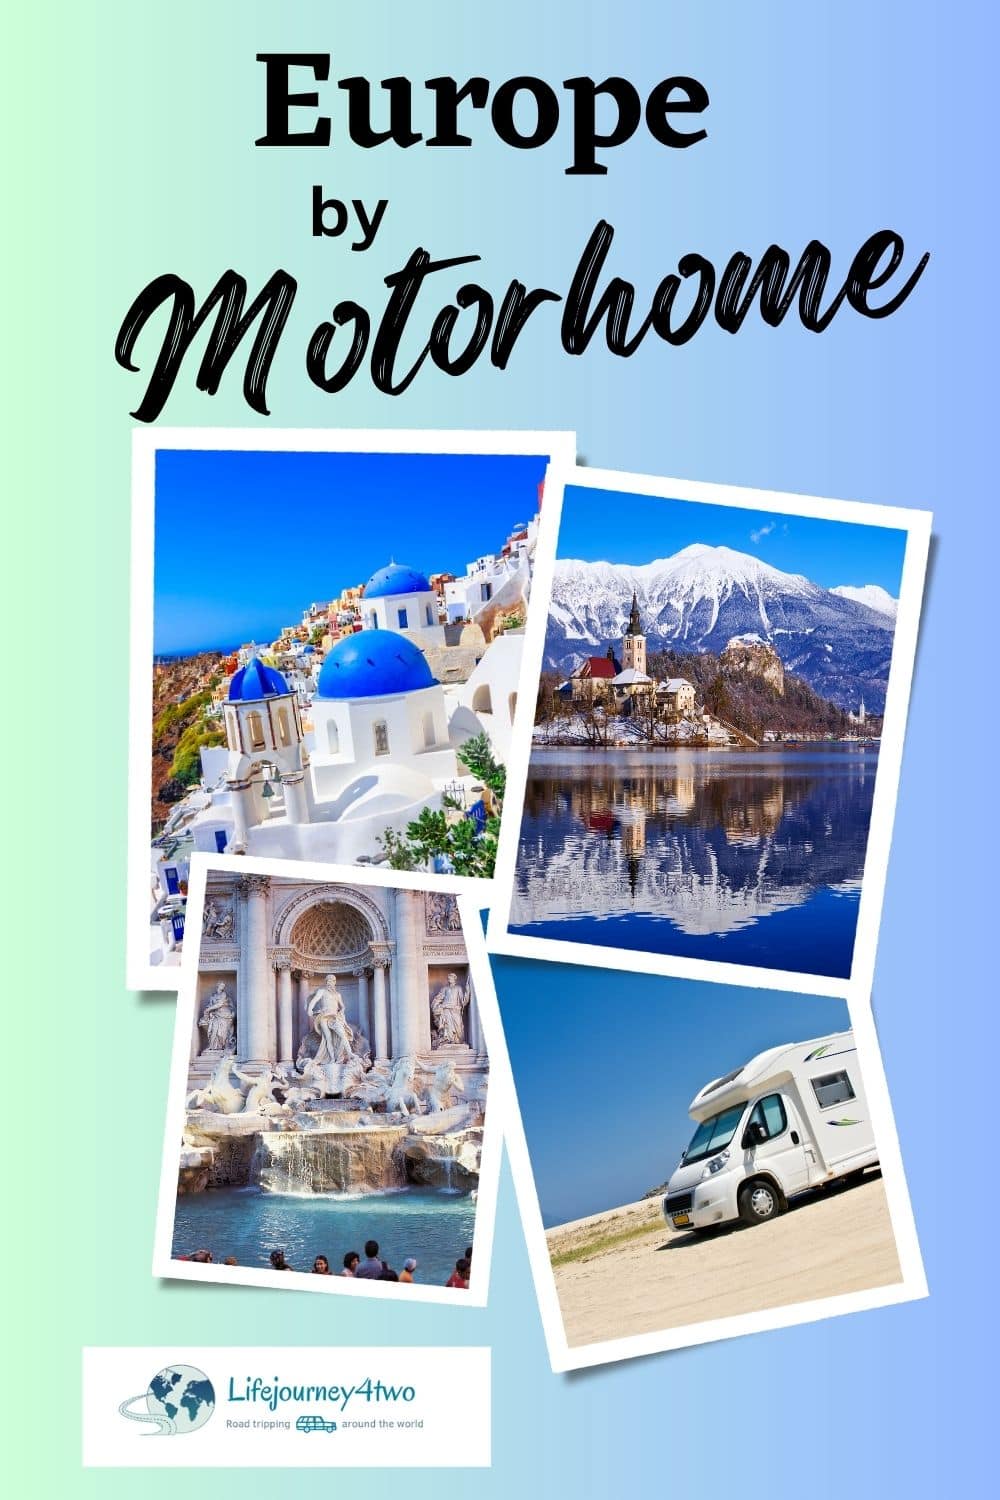 Motorhoming in Europe Pinterest pin